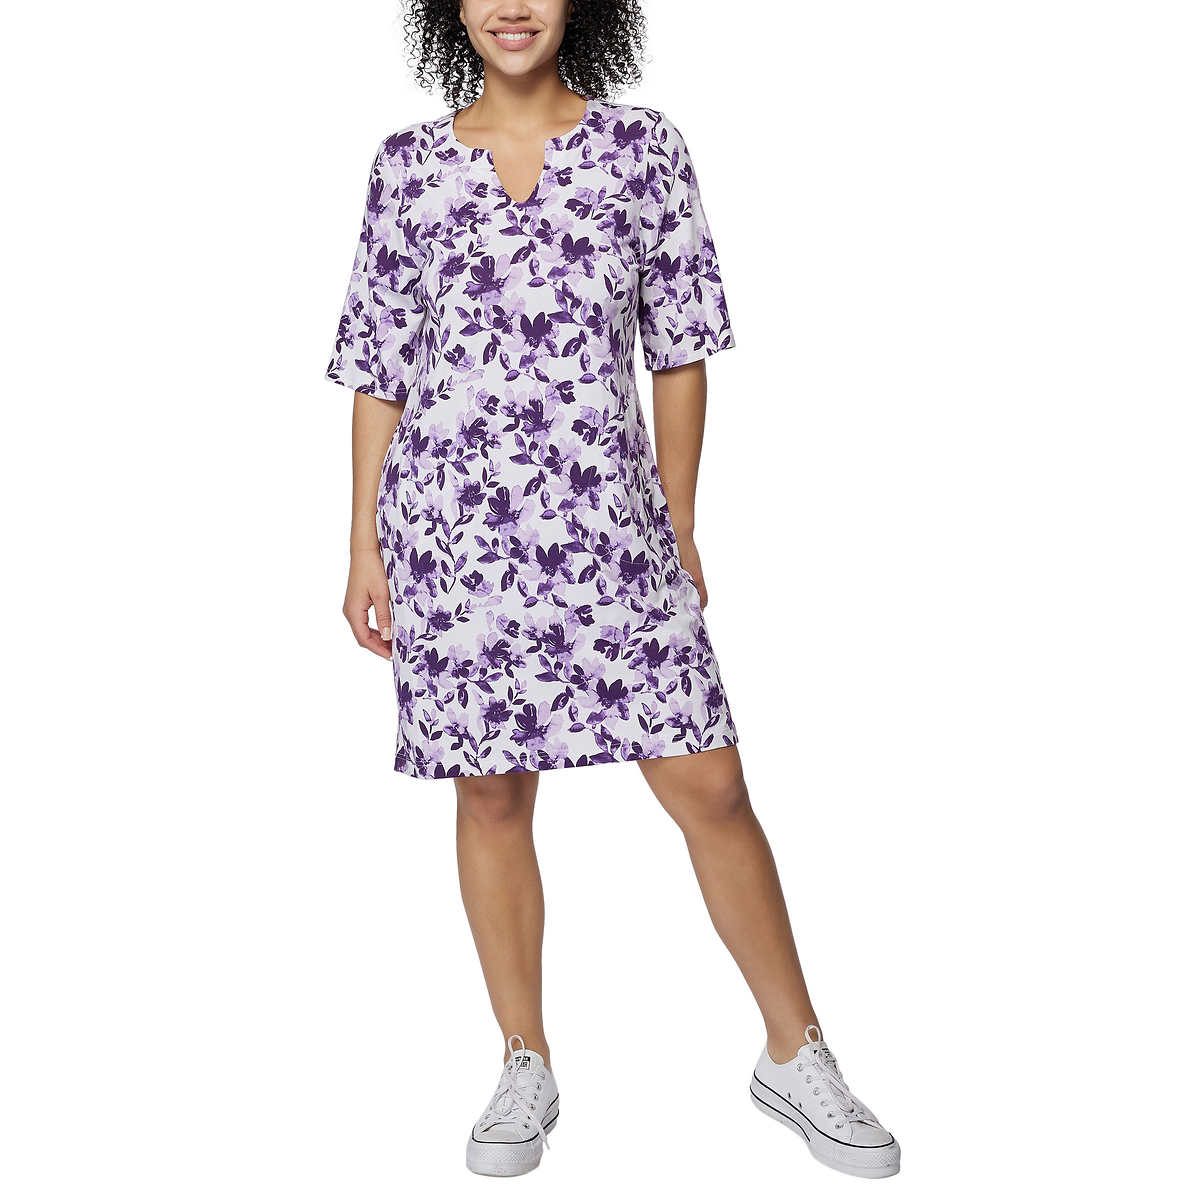 Hang Ten Women's Floral Print UPF 50+ Moisture Wicking Soft Cotton Blend Mini Sun Dress